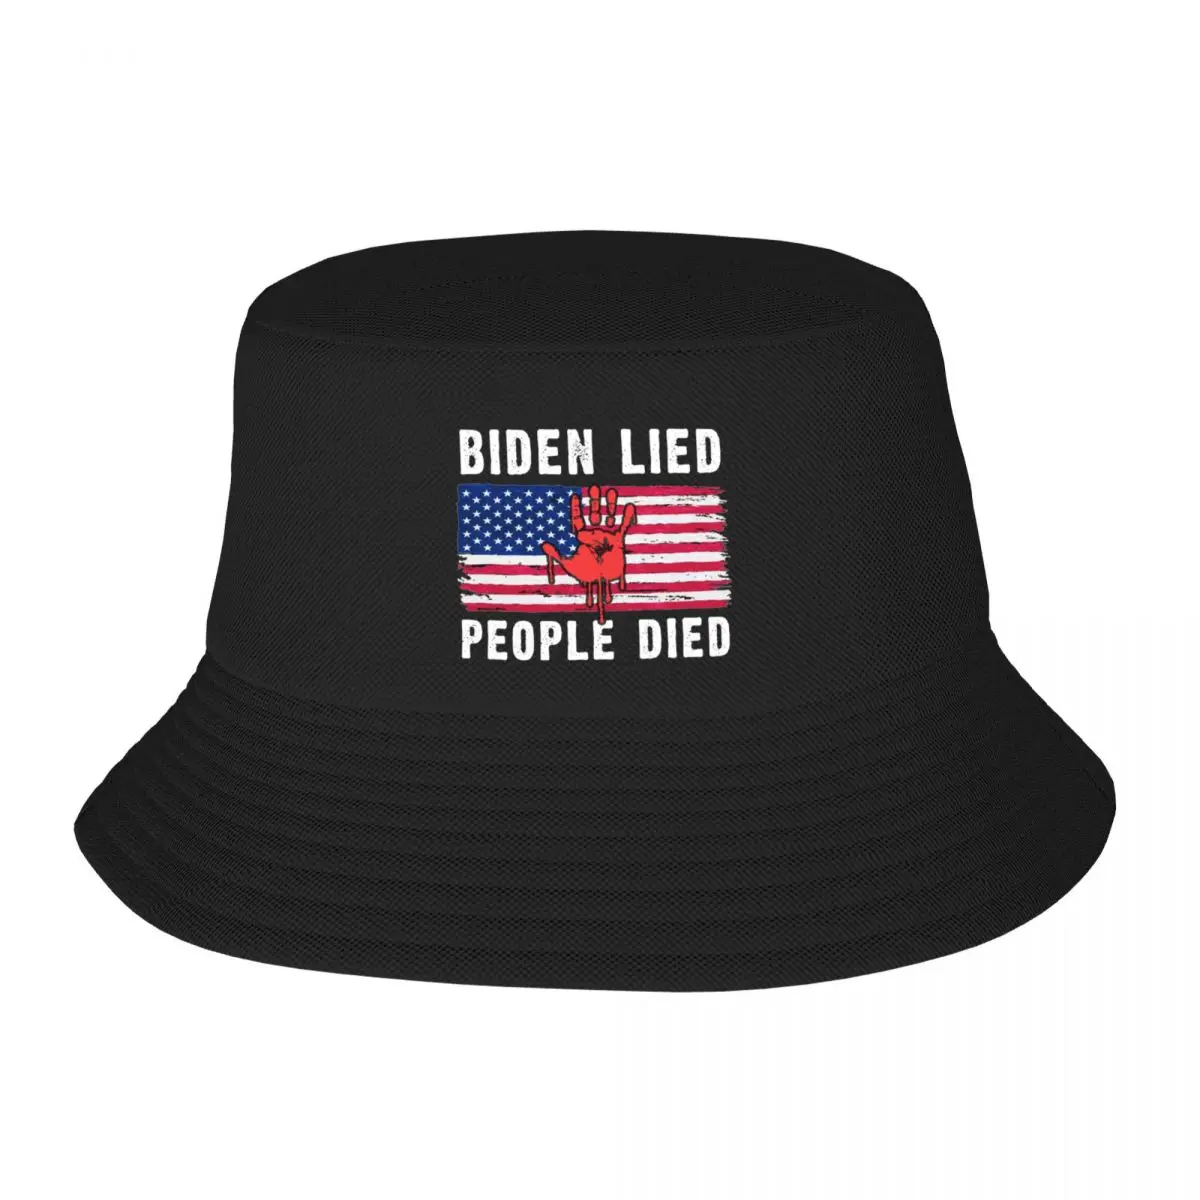 

Панама Biden для мужчин и женщин, винтажная дизайнерская шляпа с изображением лгавшего человека, флага США, импеча, современной кепки, для рыбалки